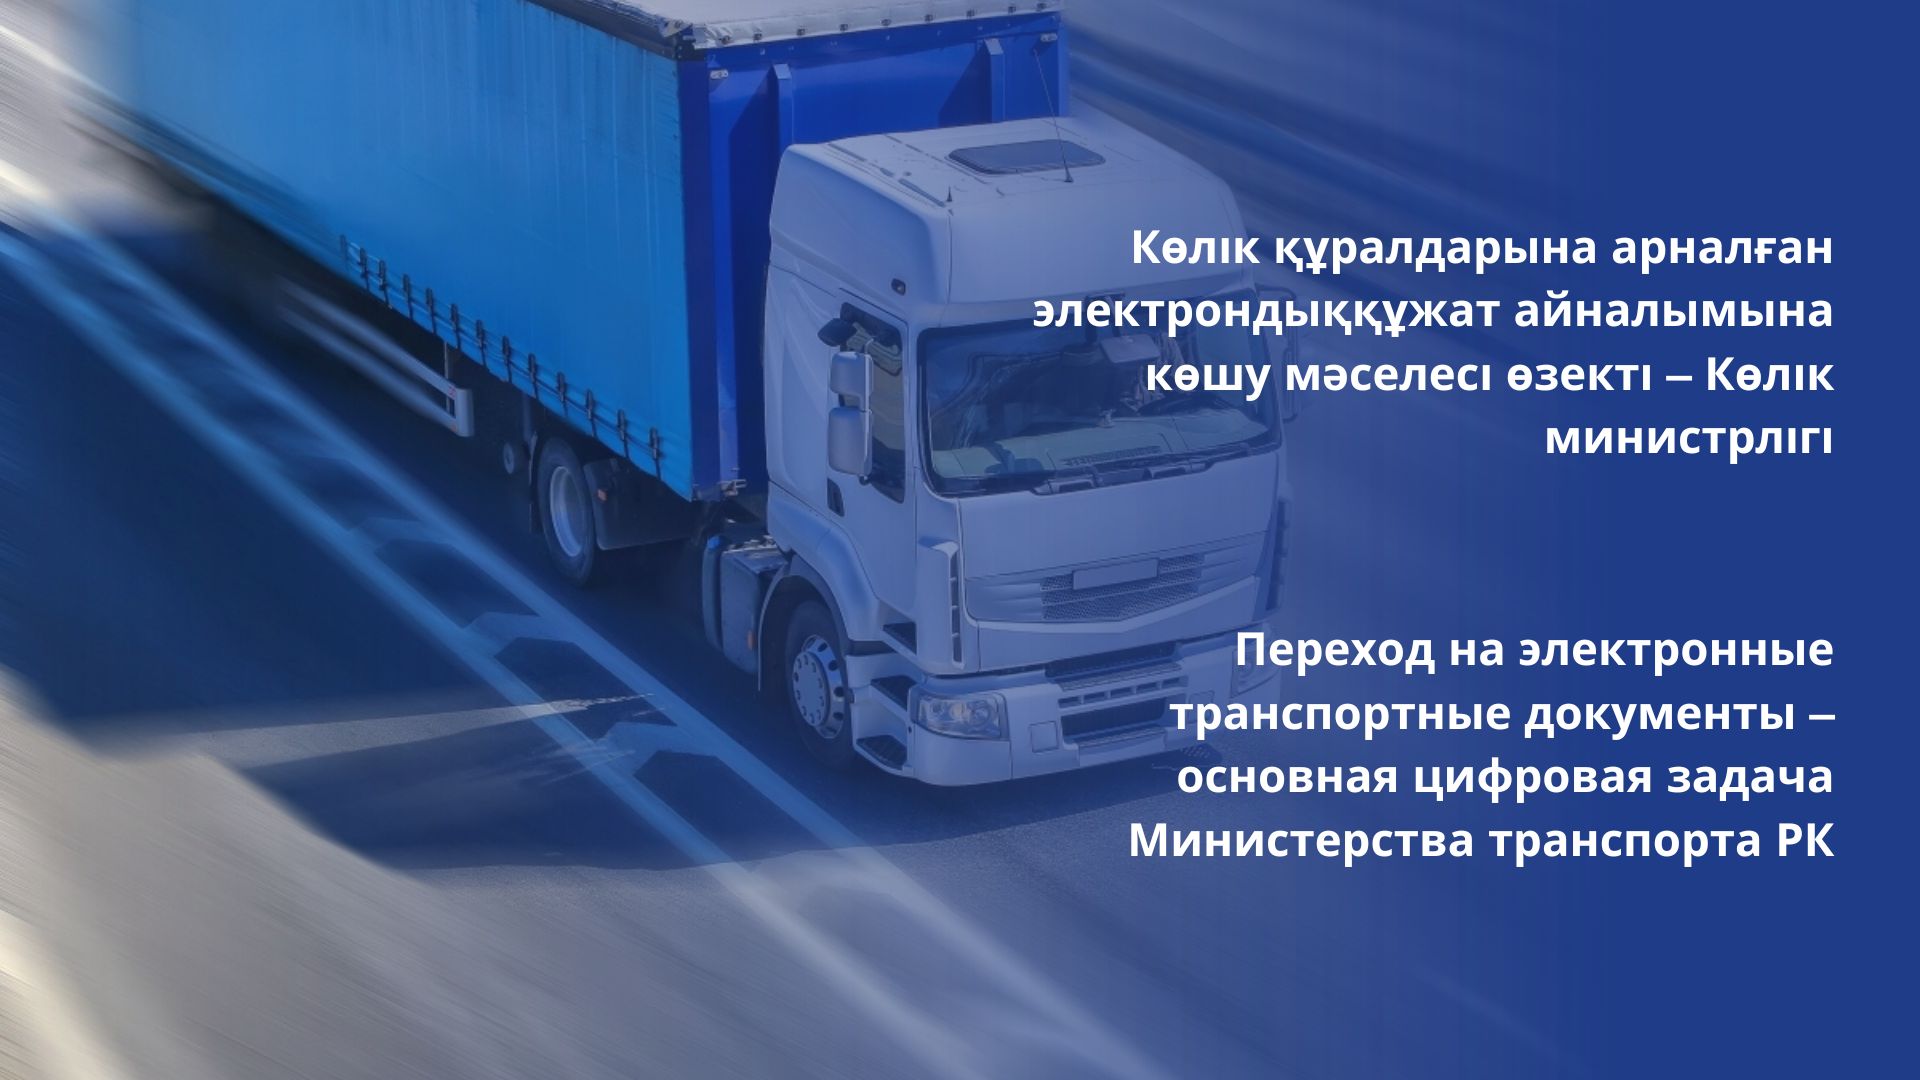 Переход на электронные транспортные документы – основная цифровая задача Министерства транспорта РК